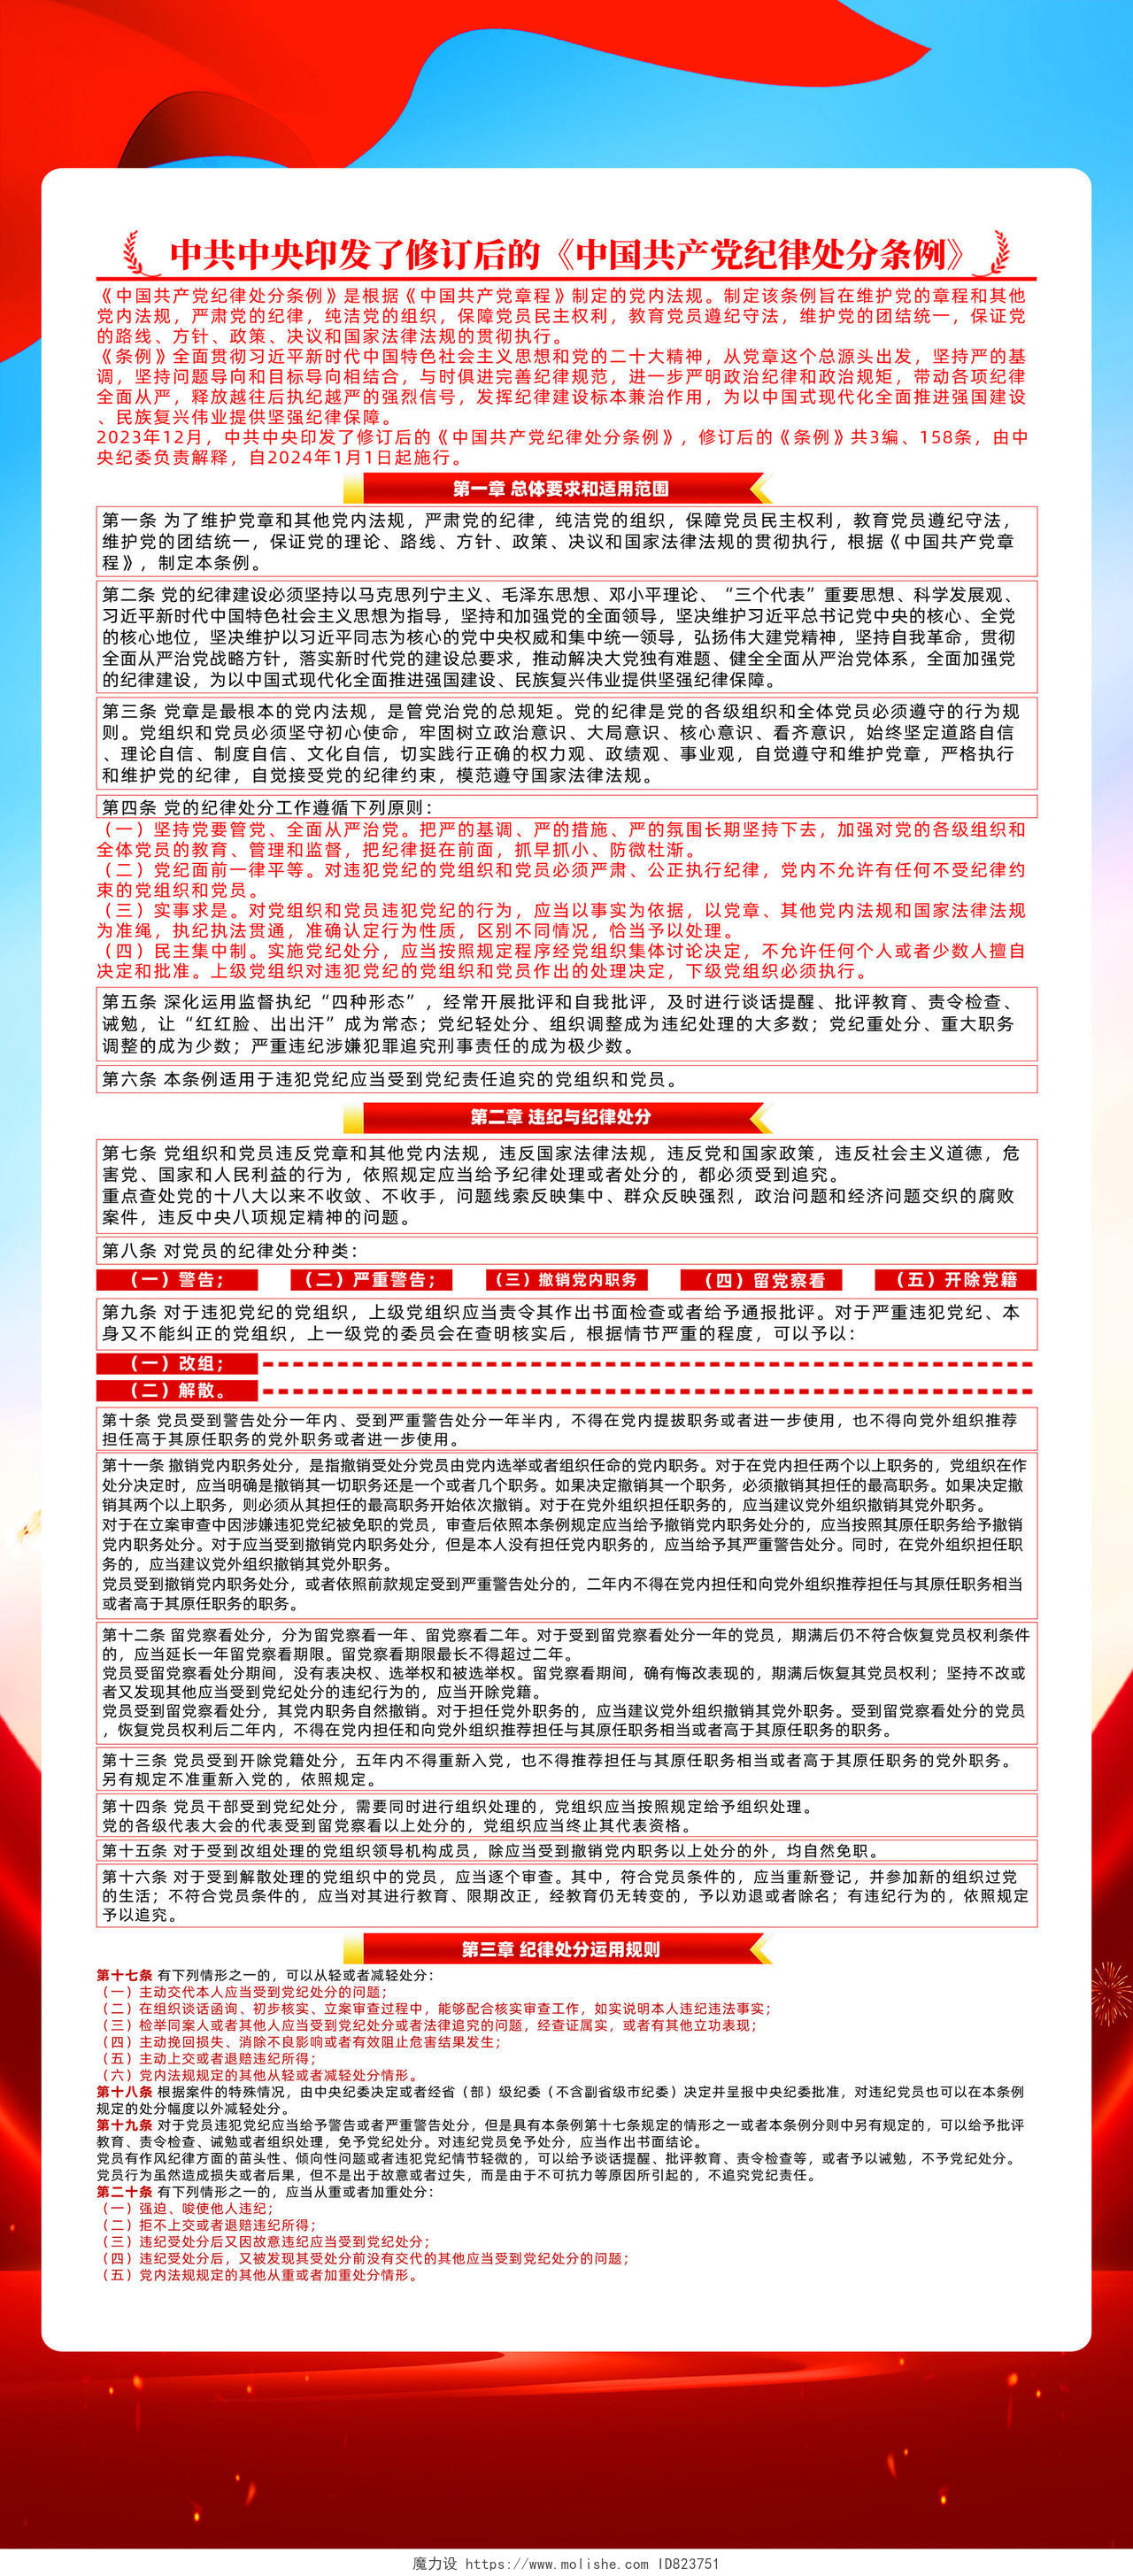 红色简约深入学习贯彻新修订中国党纪律处分条例展架宣传